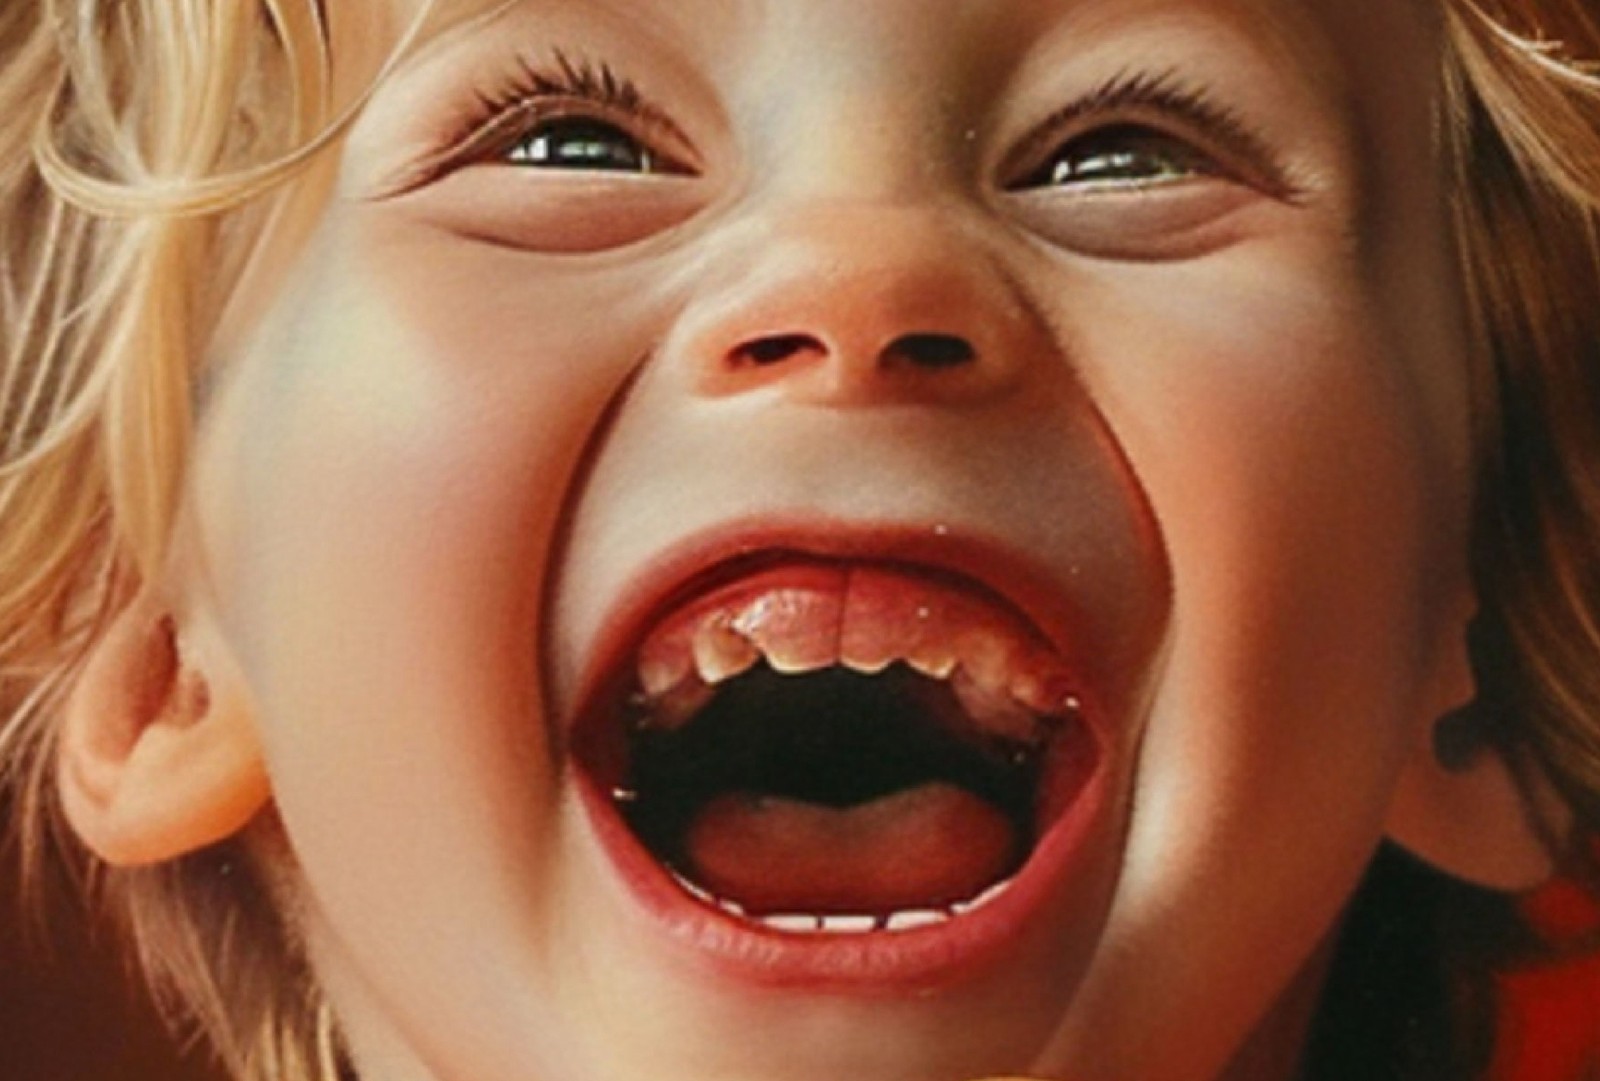 Sorriso assustador. O dente da criança que  recebe o presente se confunde com a gengiva — Foto: Imagem gerada por IA/Midjourney